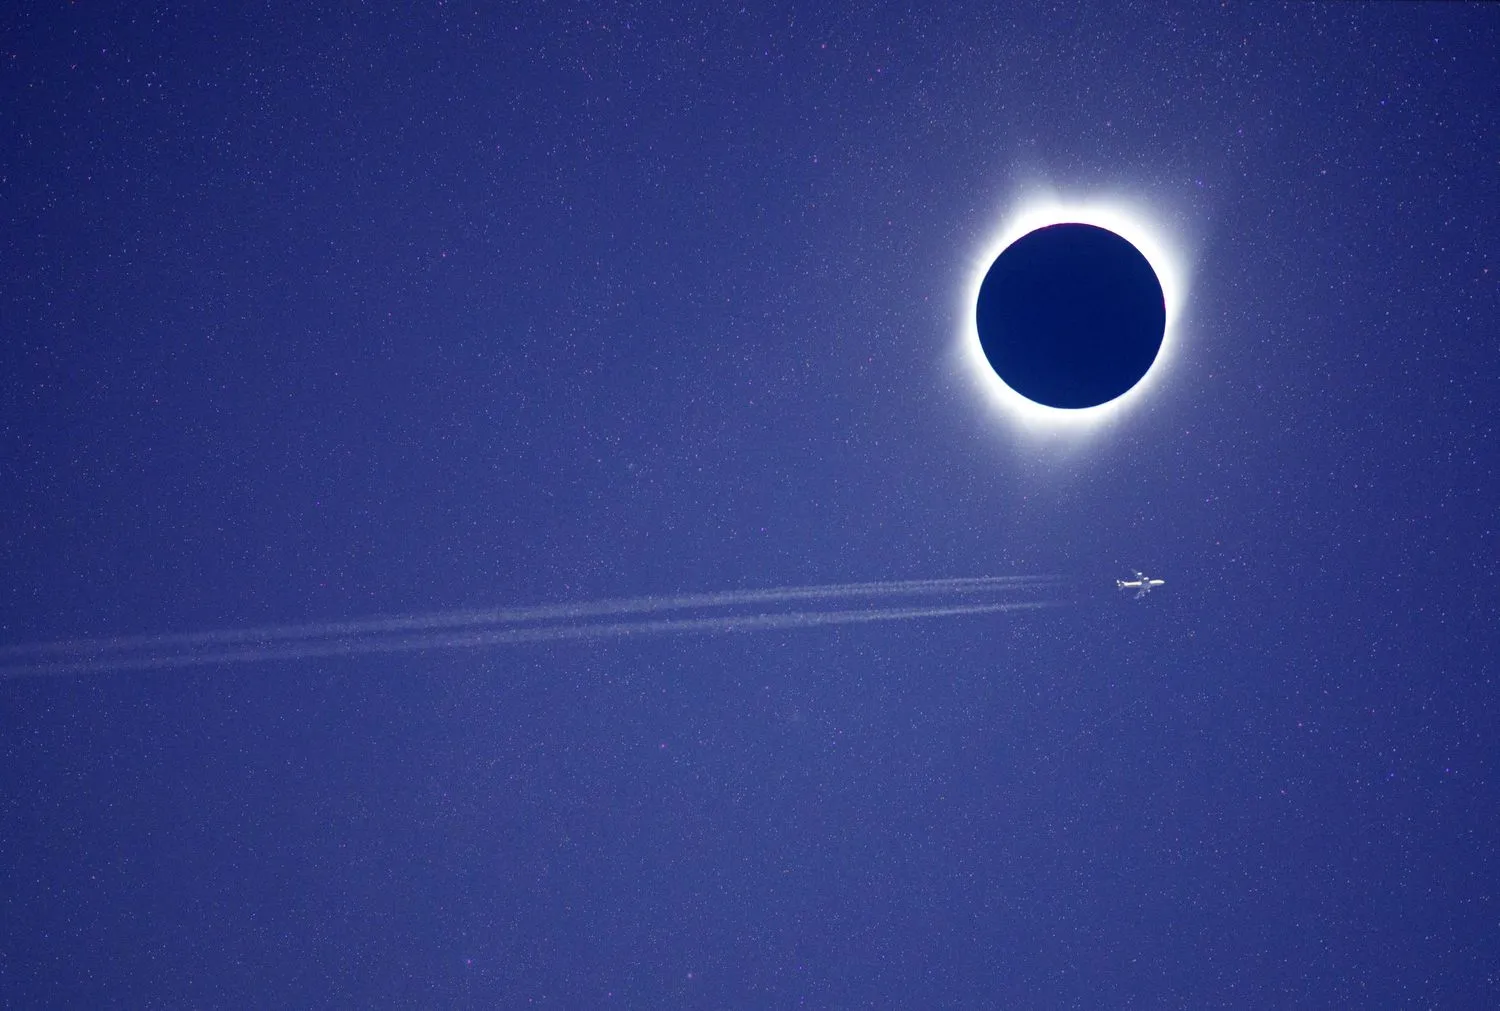 ein Flugzeug fliegt durch den Himmel direkt neben dem Mond, der die Sonne am Himmel verdunkelt